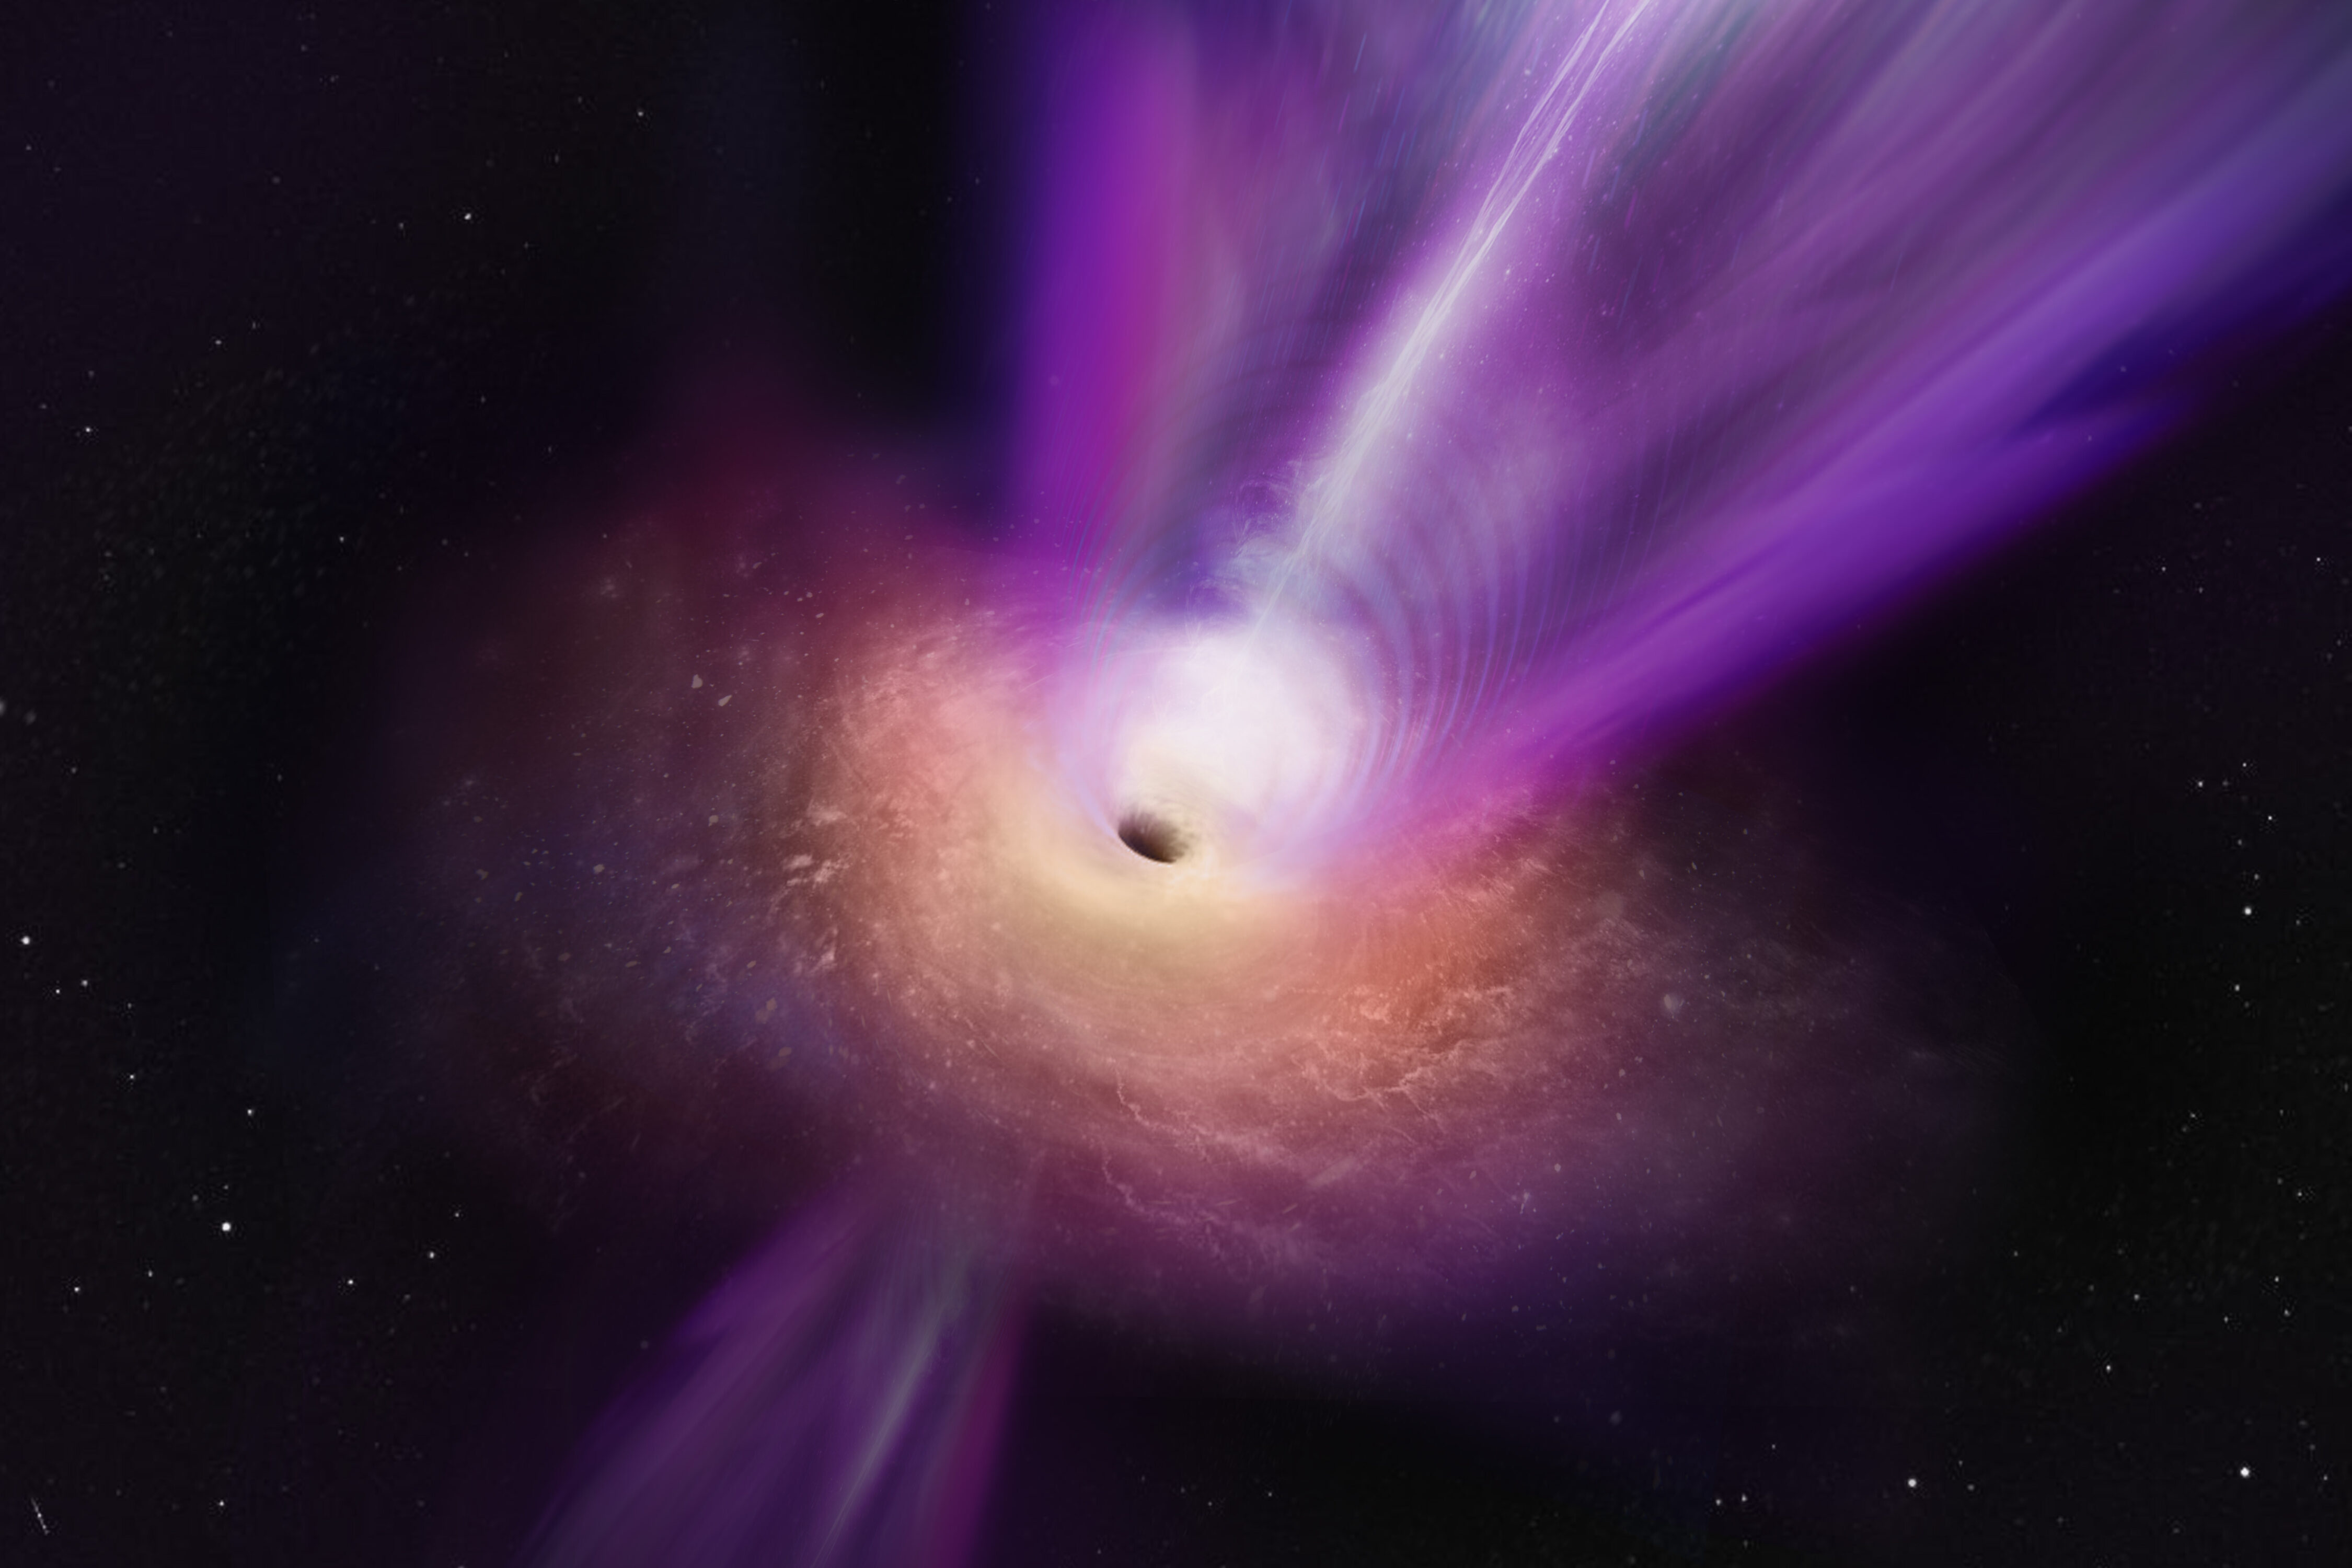 Mientras observaban el núcleo de radio compacto de M87, un equipo científico ha descubierto nuevos detalles sobre el agujero negro supermasivo de la galaxia. En esta representación artística, el chorro masivo del agujero negro se ve elevándose desde el centro del agujero negro. Las observaciones en las que se basa esta ilustración representan la primera vez que el chorro y la sombra del agujero negro se han fotografiado juntos, proporcionando a la comunidad científica nuevos conocimientos sobre cómo los agujeros negros pueden lanzar estos potentes chorros. Crédito: S. Dagnello (NRAO/AUI/NSF)